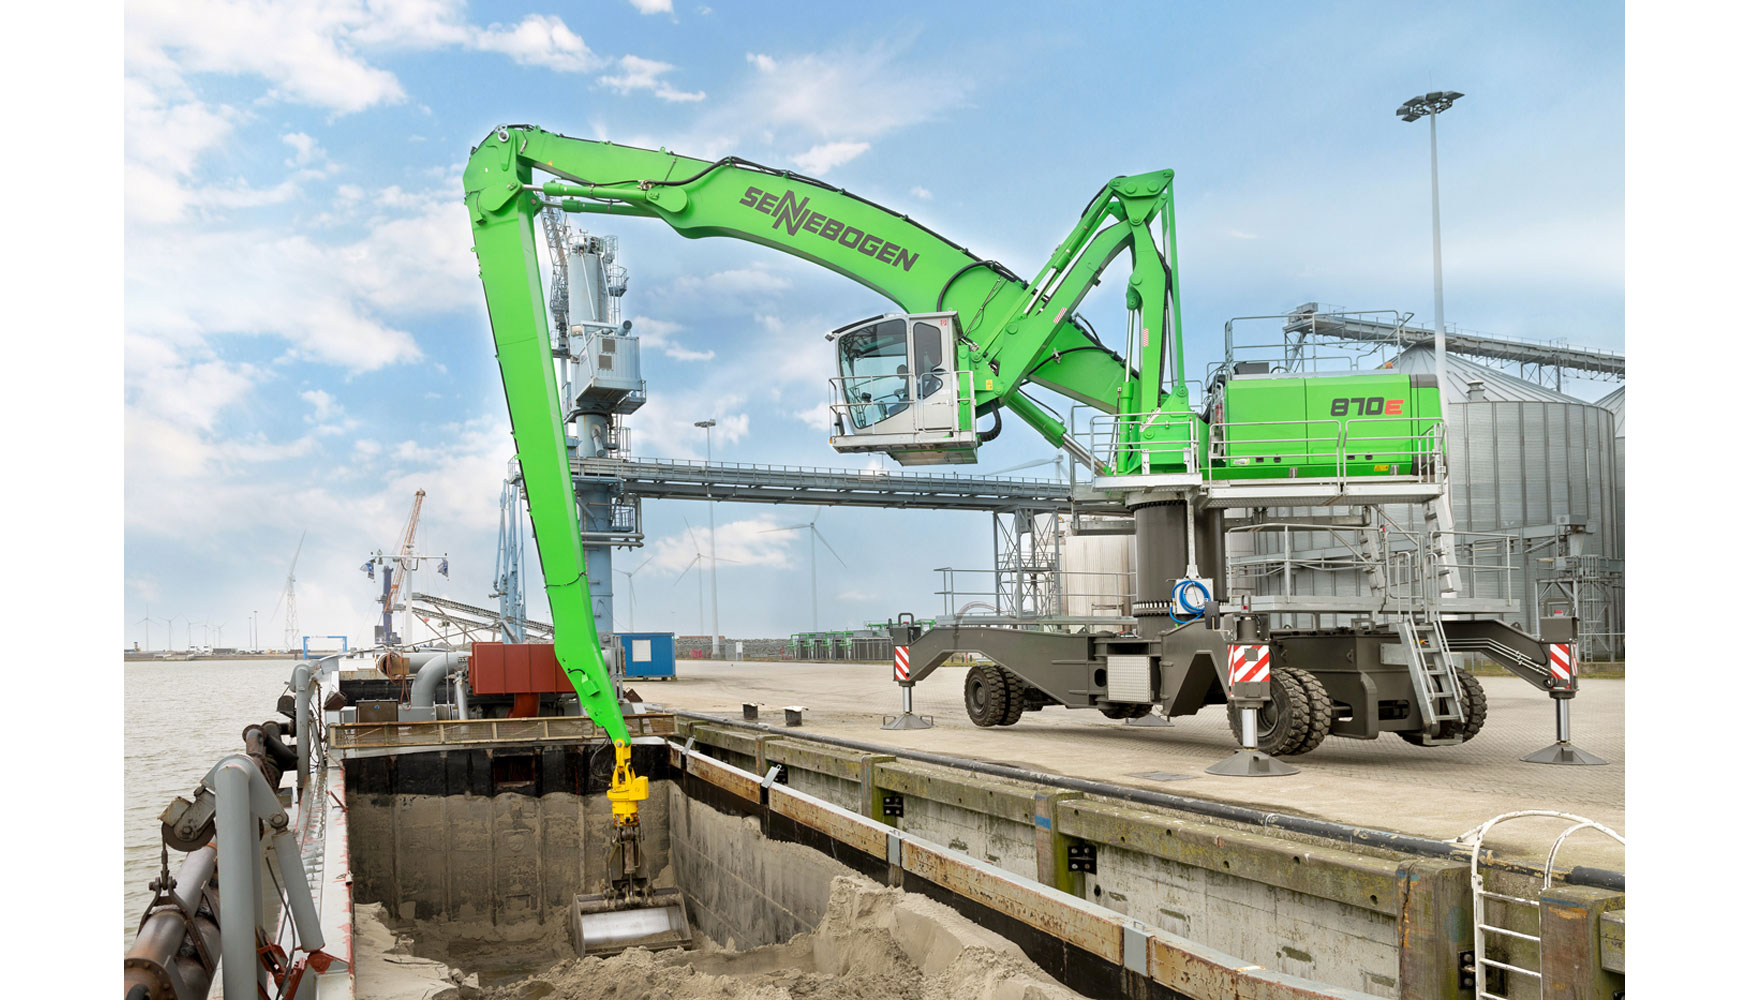 La nueva excavadora manipuladora portuaria 870 de Sennebogen carga en el puerto holands de Eemshaven de forma prioritaria slidos a granel y...